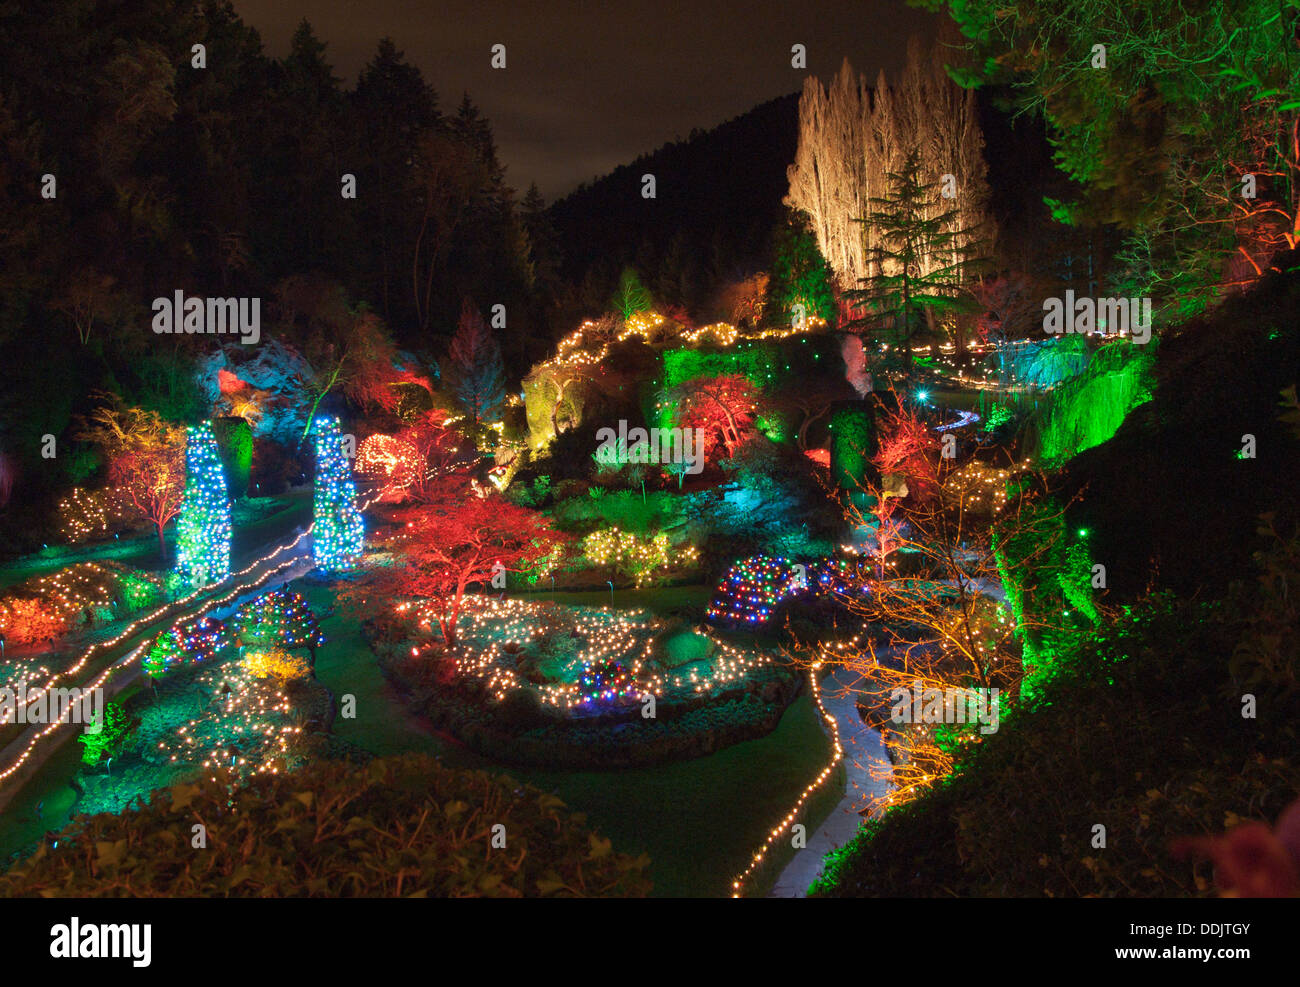 Brilliant Christmas lights illuminate the Sunken Garden at the